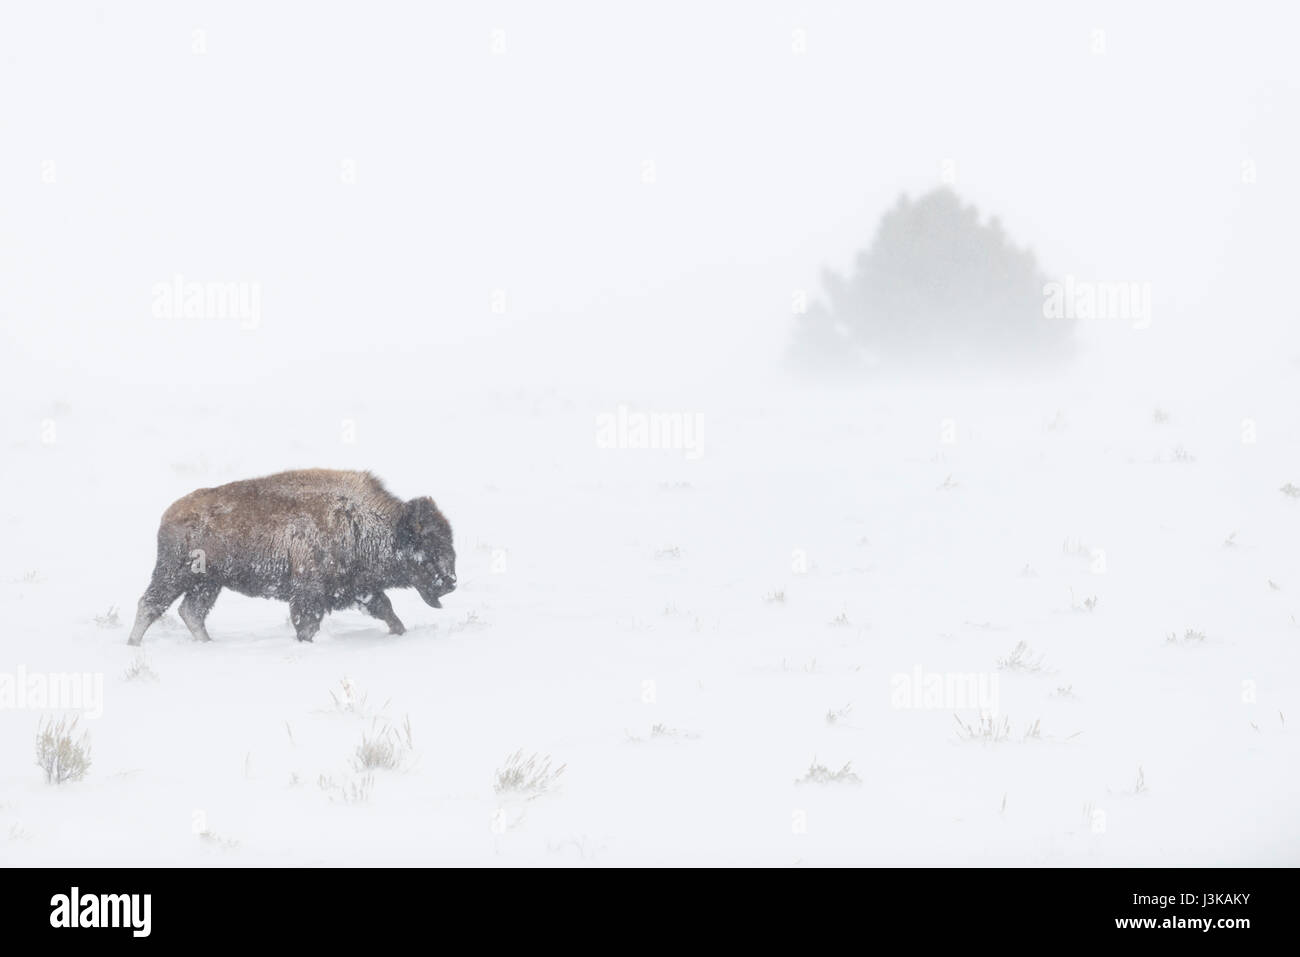 Bisonte americano (Bison bison ) en duras condiciones invernales, Blizzard, caminando a través de soplado de nieve, Parque Nacional Yellowstone, Wyoming. Foto de stock